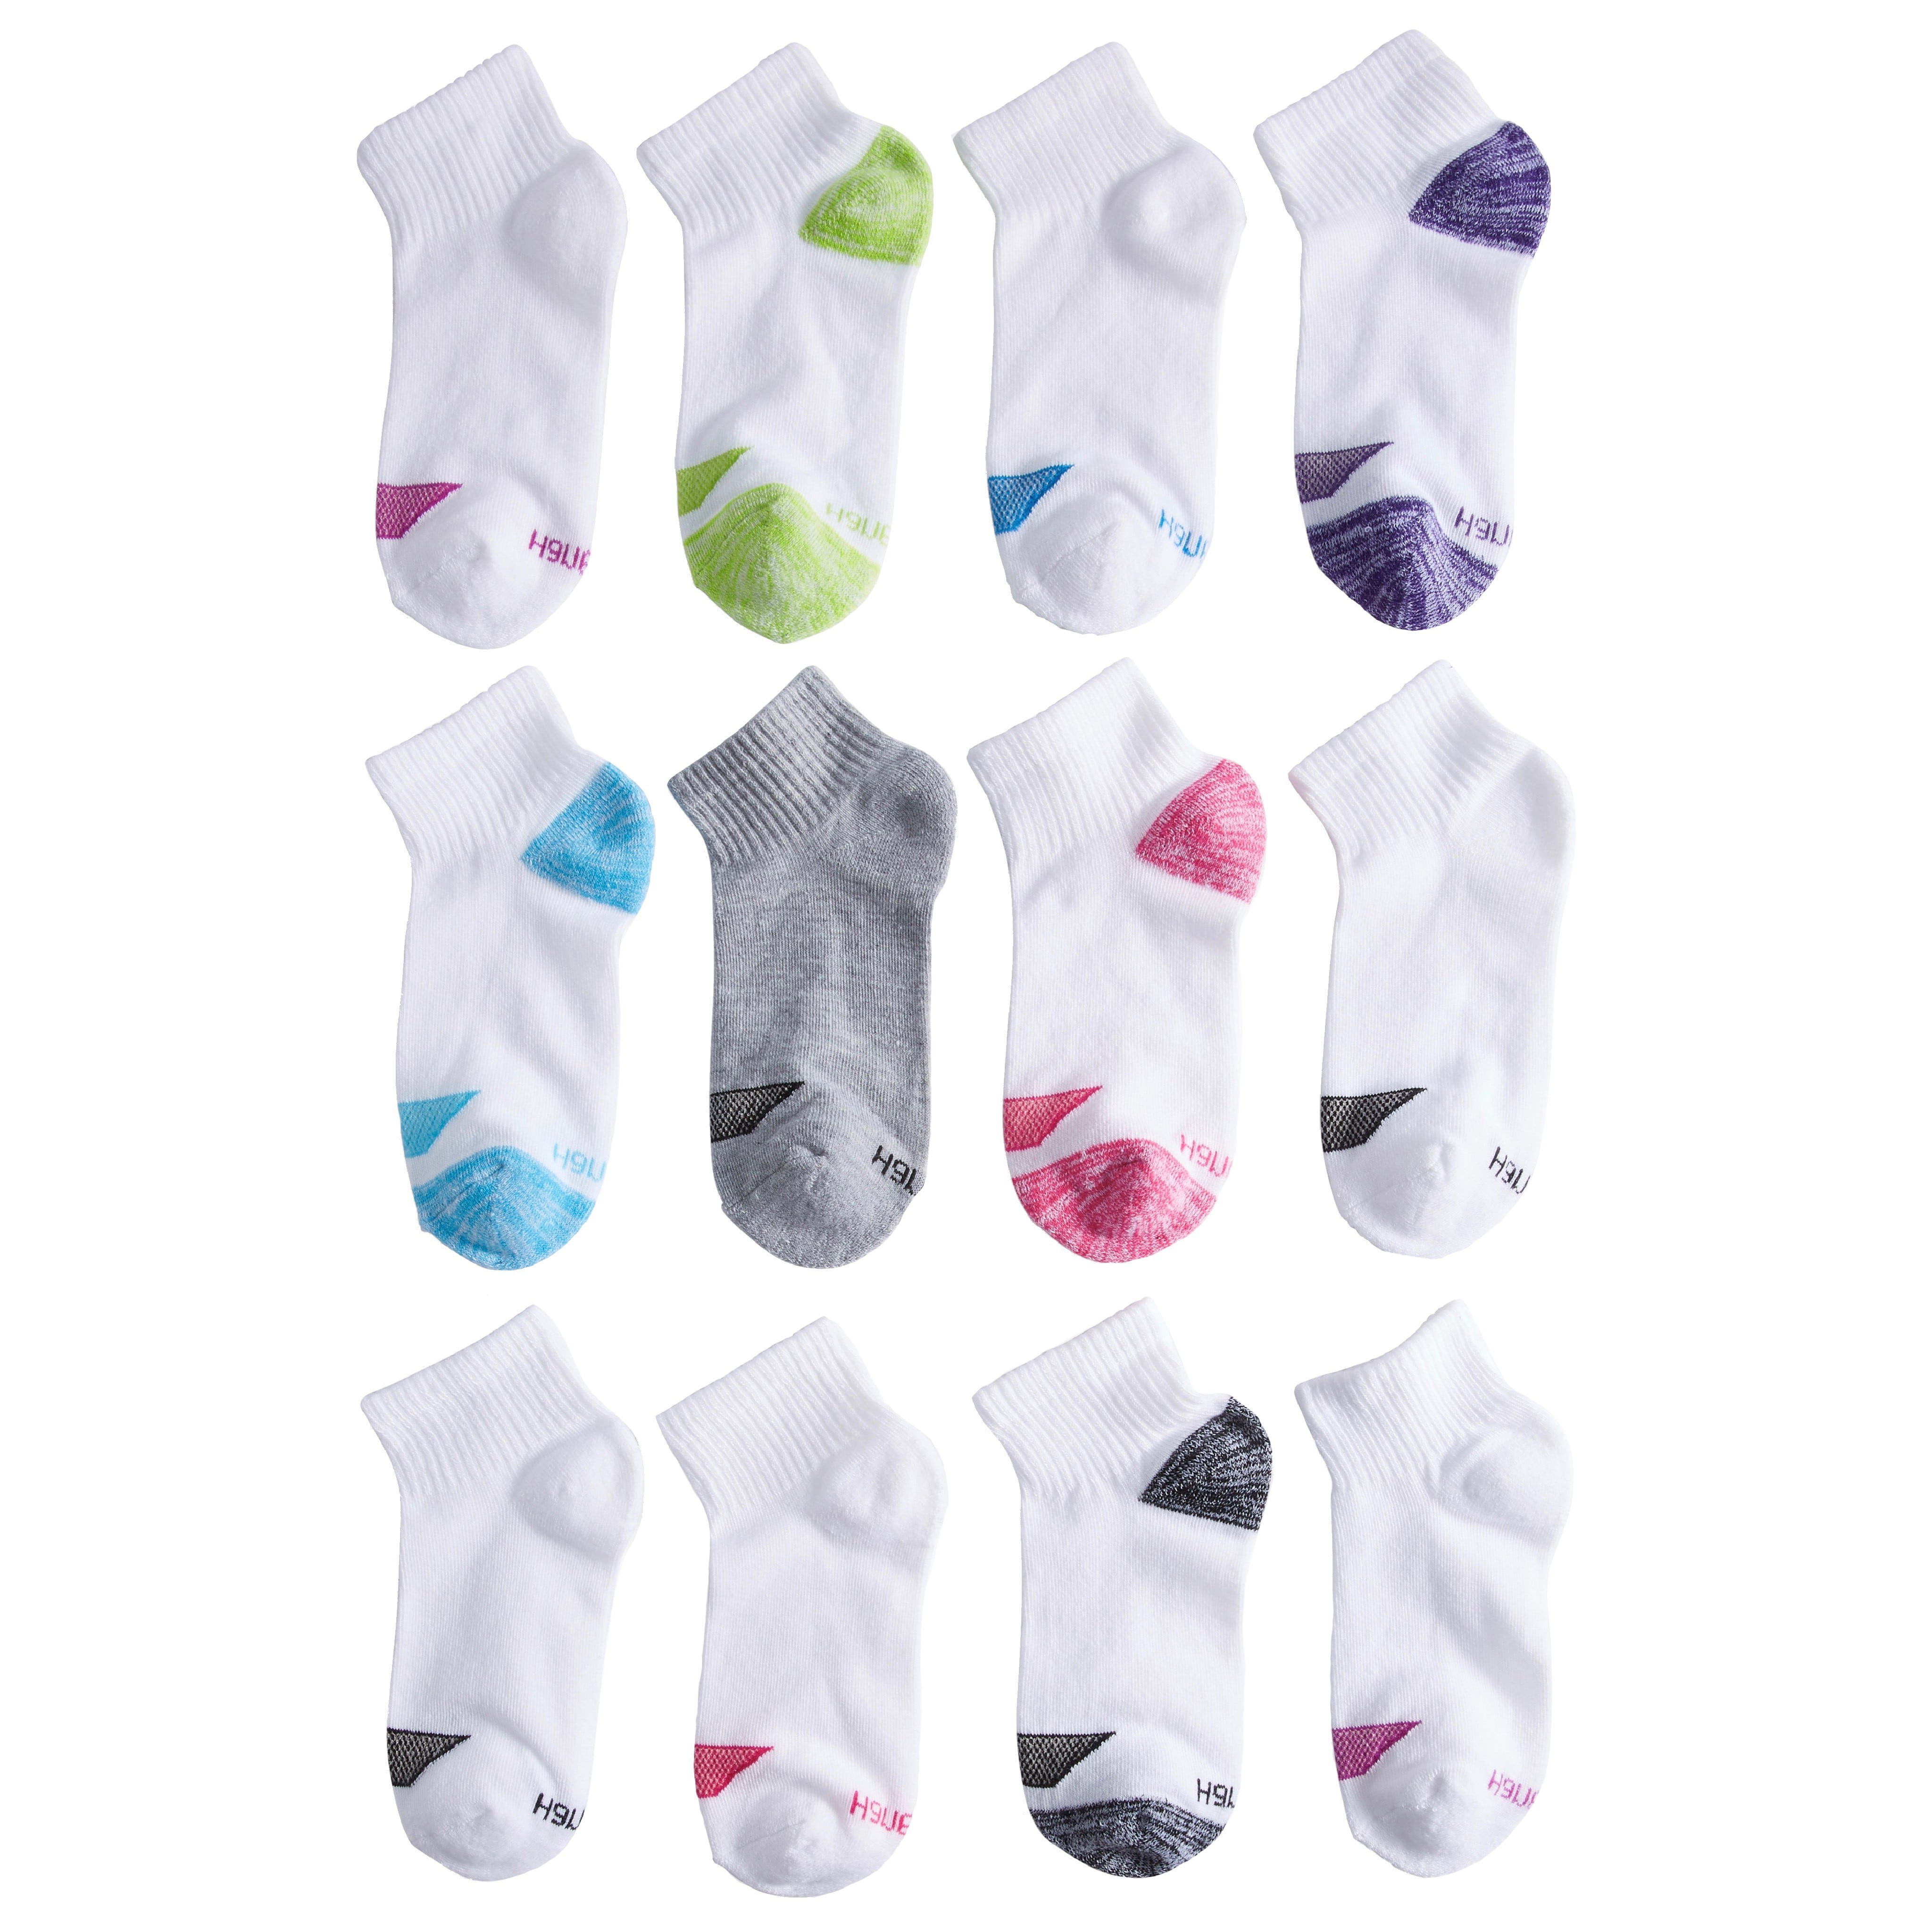 Hanes girls 12 Pack Ankle Socks Socks